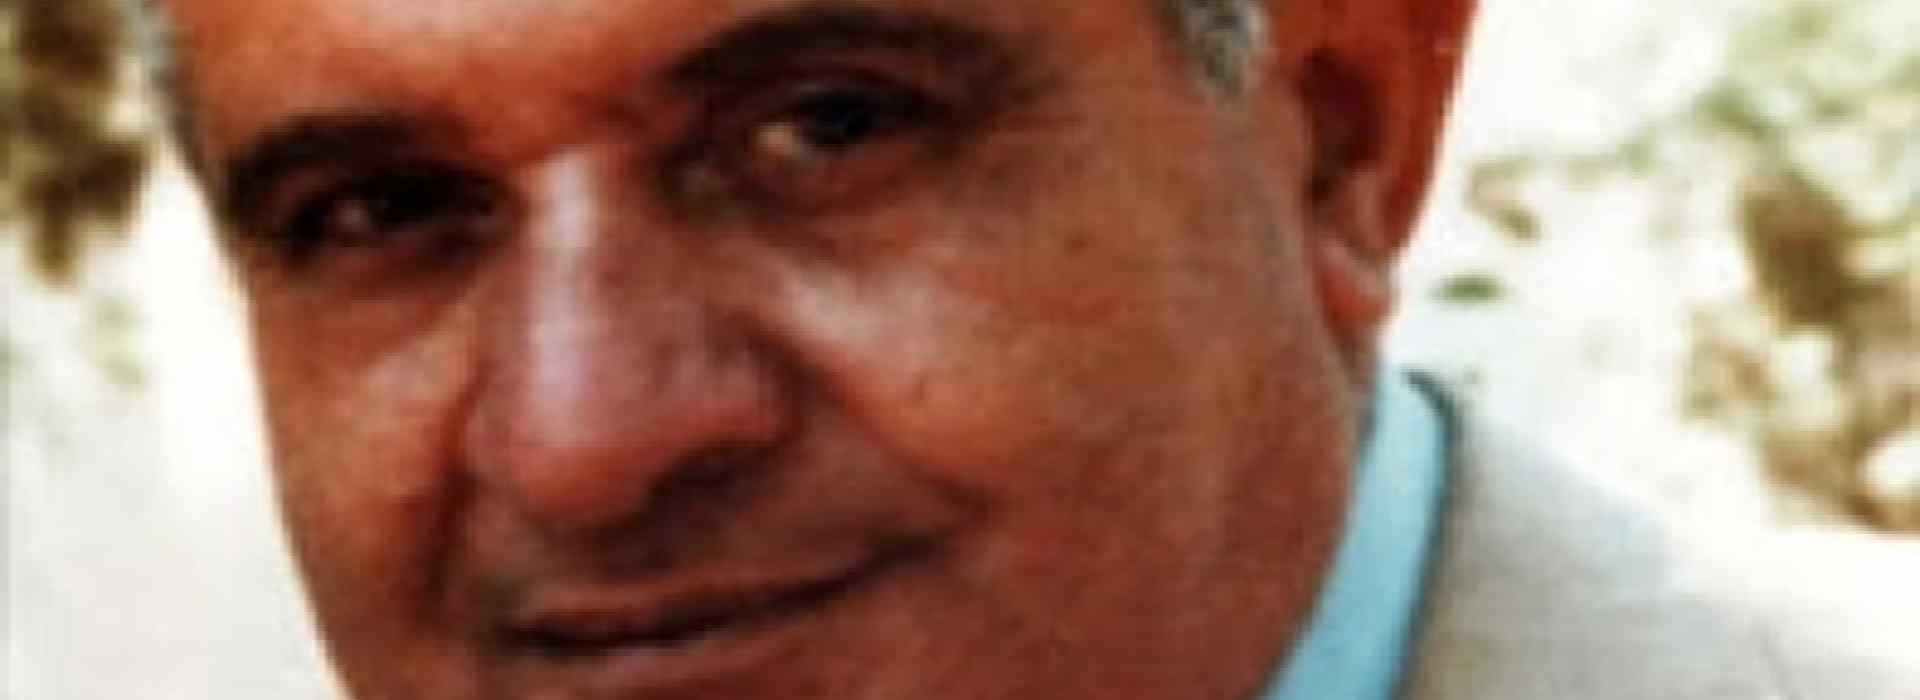 Gennaro Musella, l'ingegnere ucciso dalla 'ndrangheta: 40 anni senza giustizia